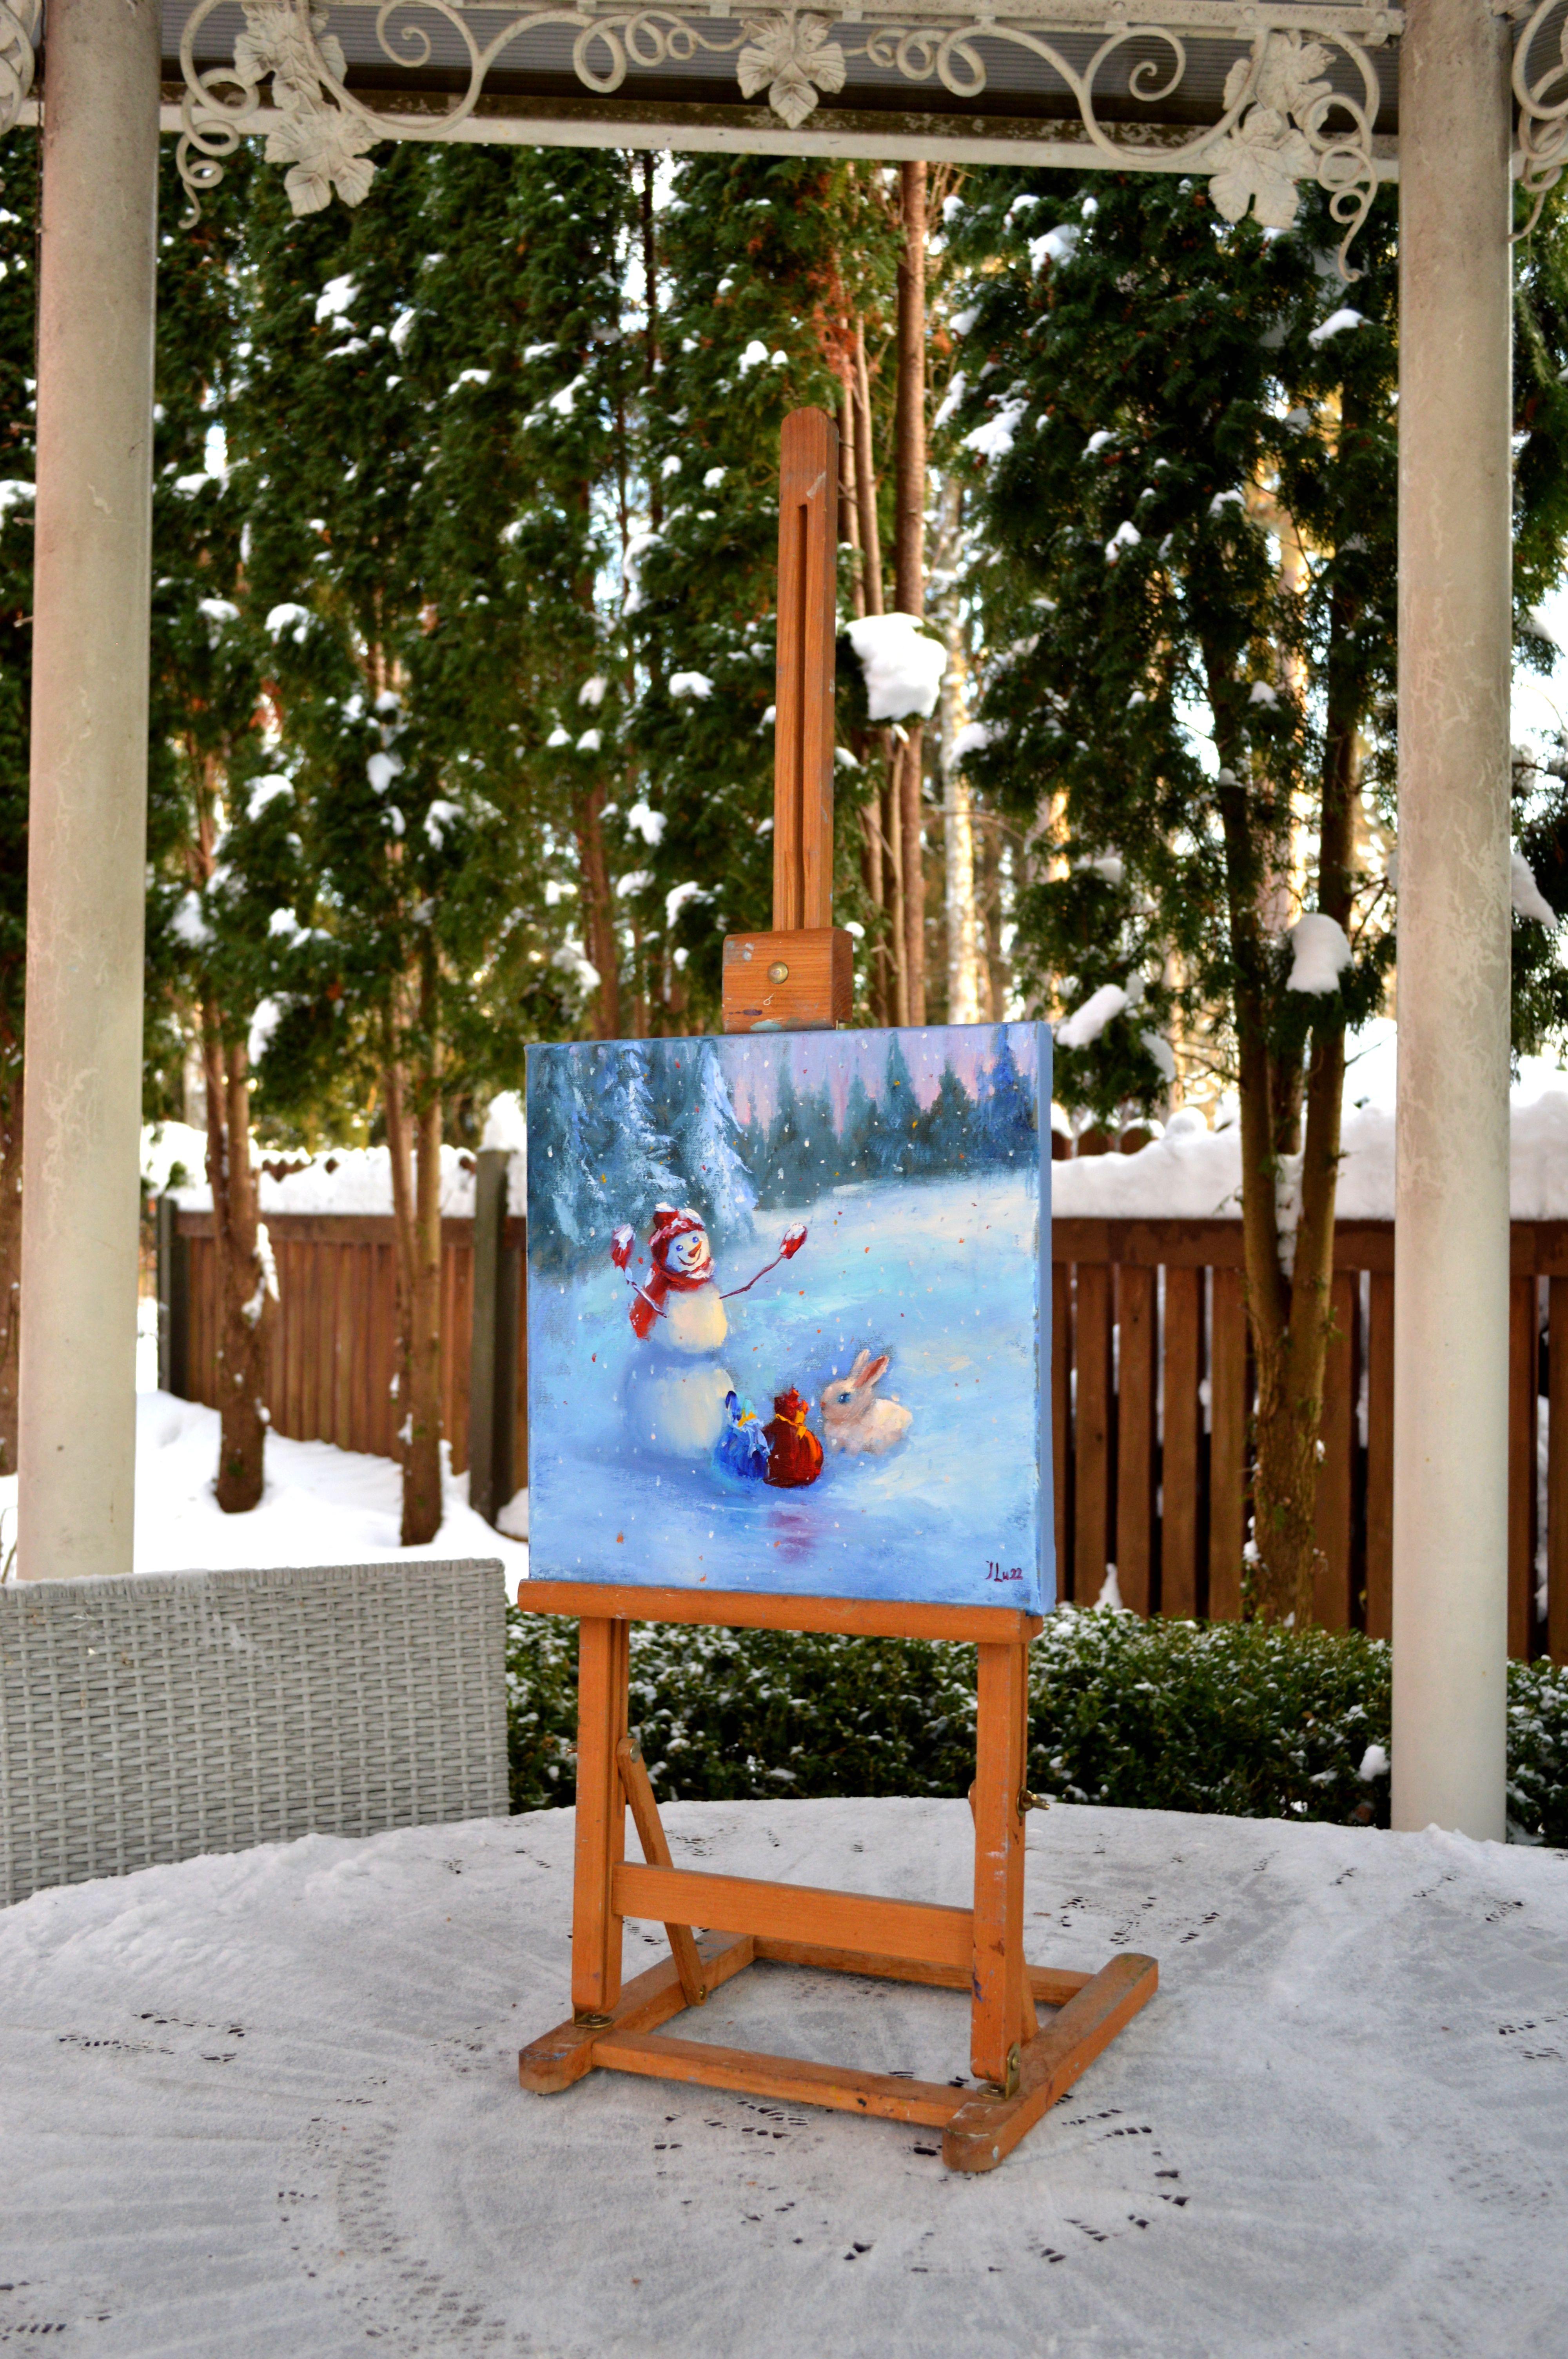 Dans cette peinture à l'huile, j'ai cherché à capturer l'essence de la joie et l'esprit de don. Le bonhomme de neige, avec son large sourire et ses bras ouverts, représente la chaleur de la fête dans un contexte froid. A côté, un gentil lapin